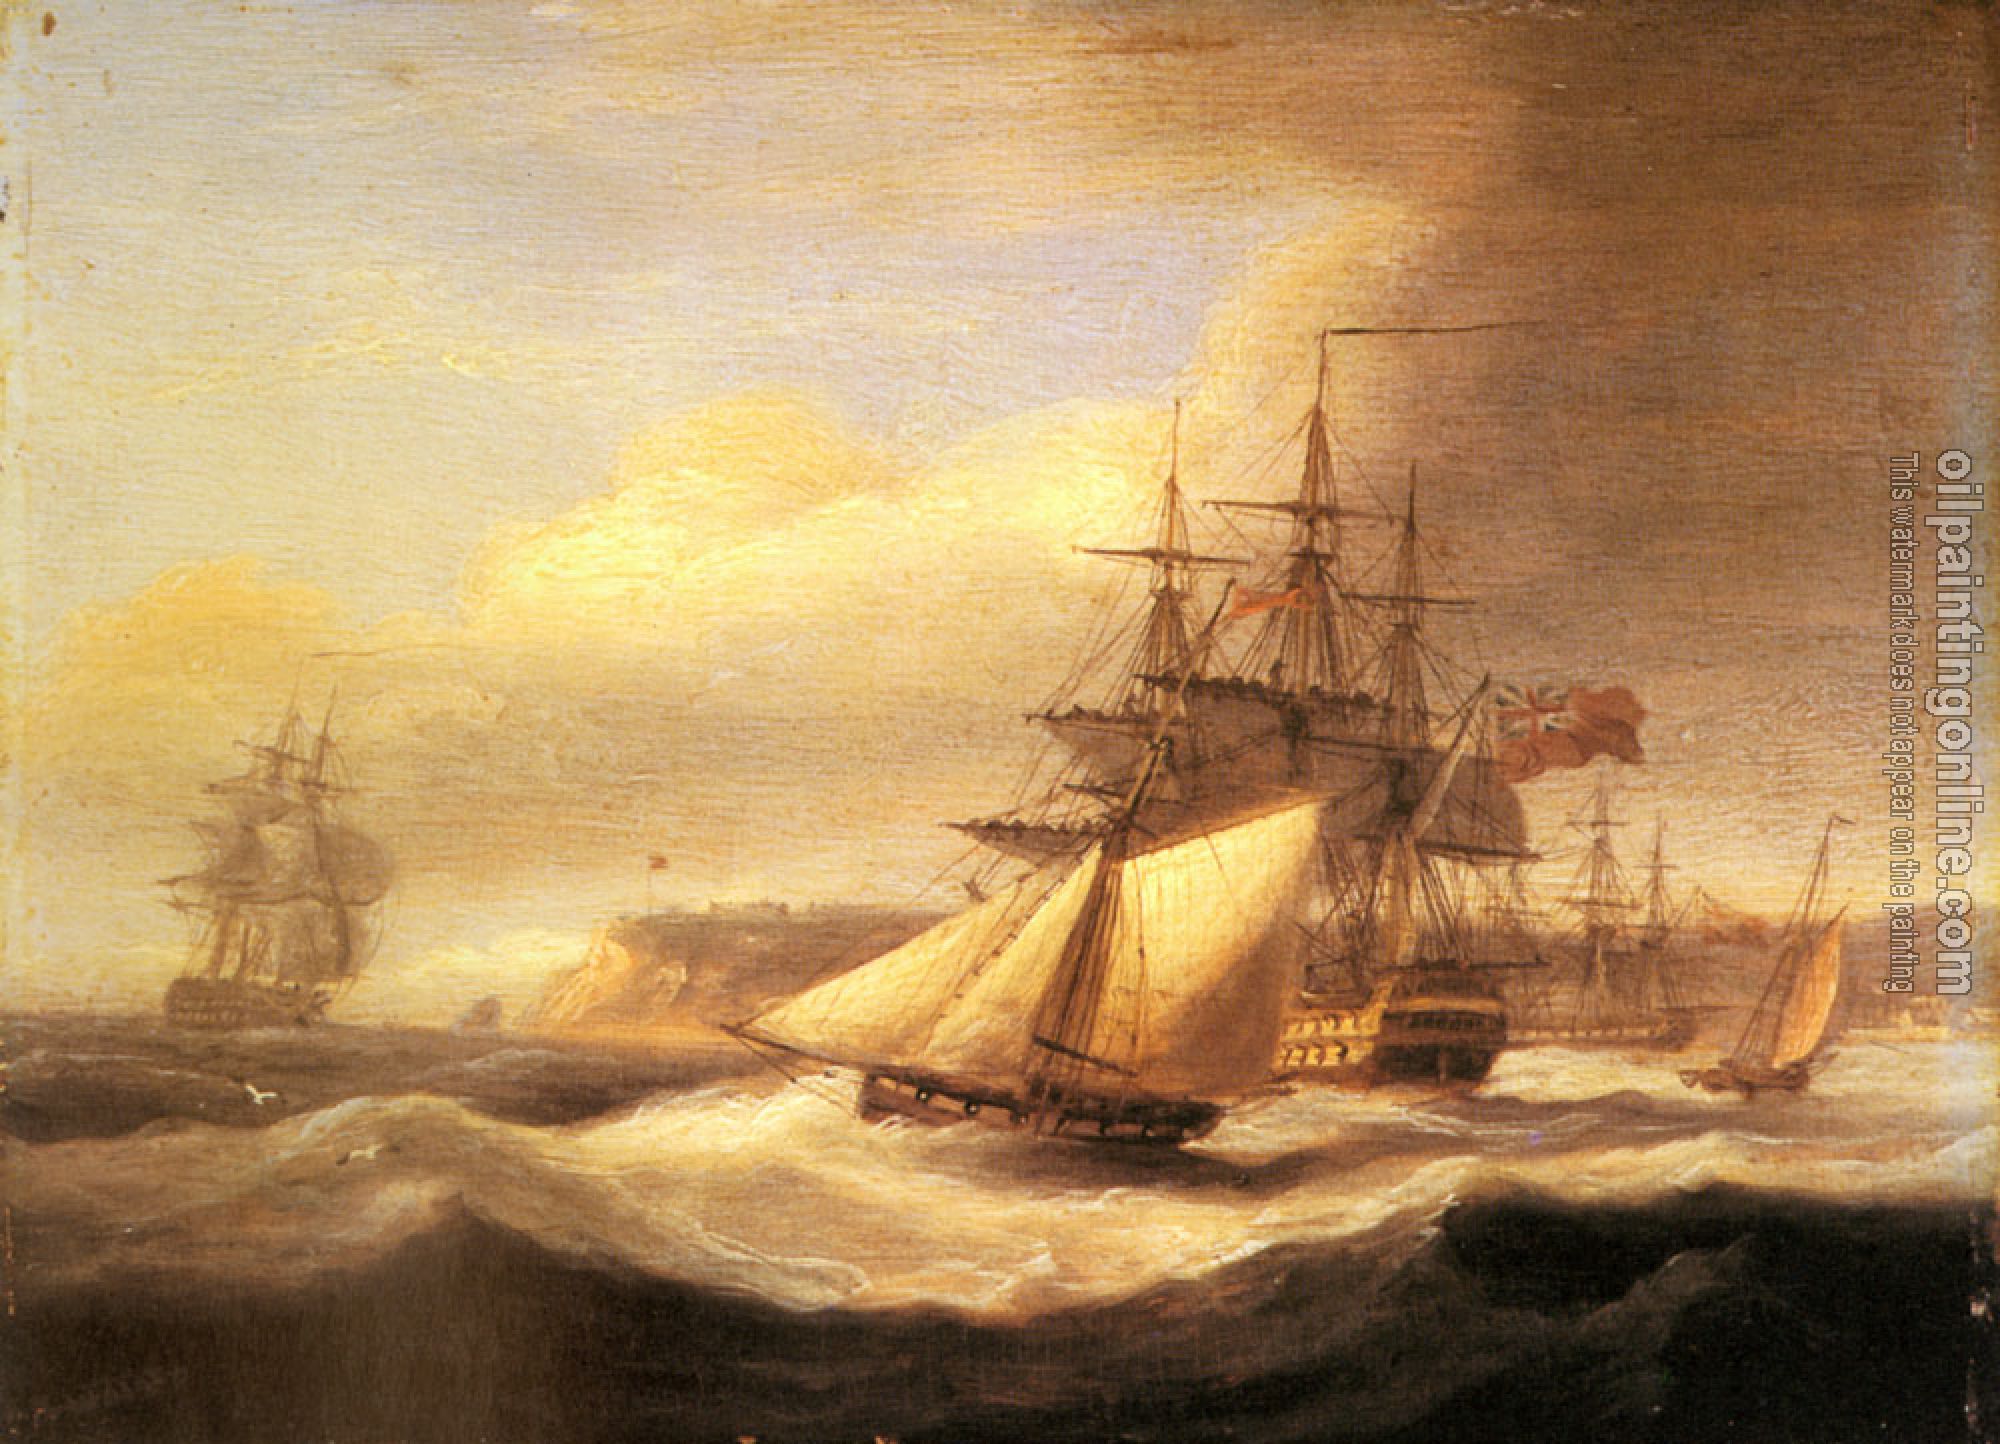 Luny, Thomas - Naval ships setting sail